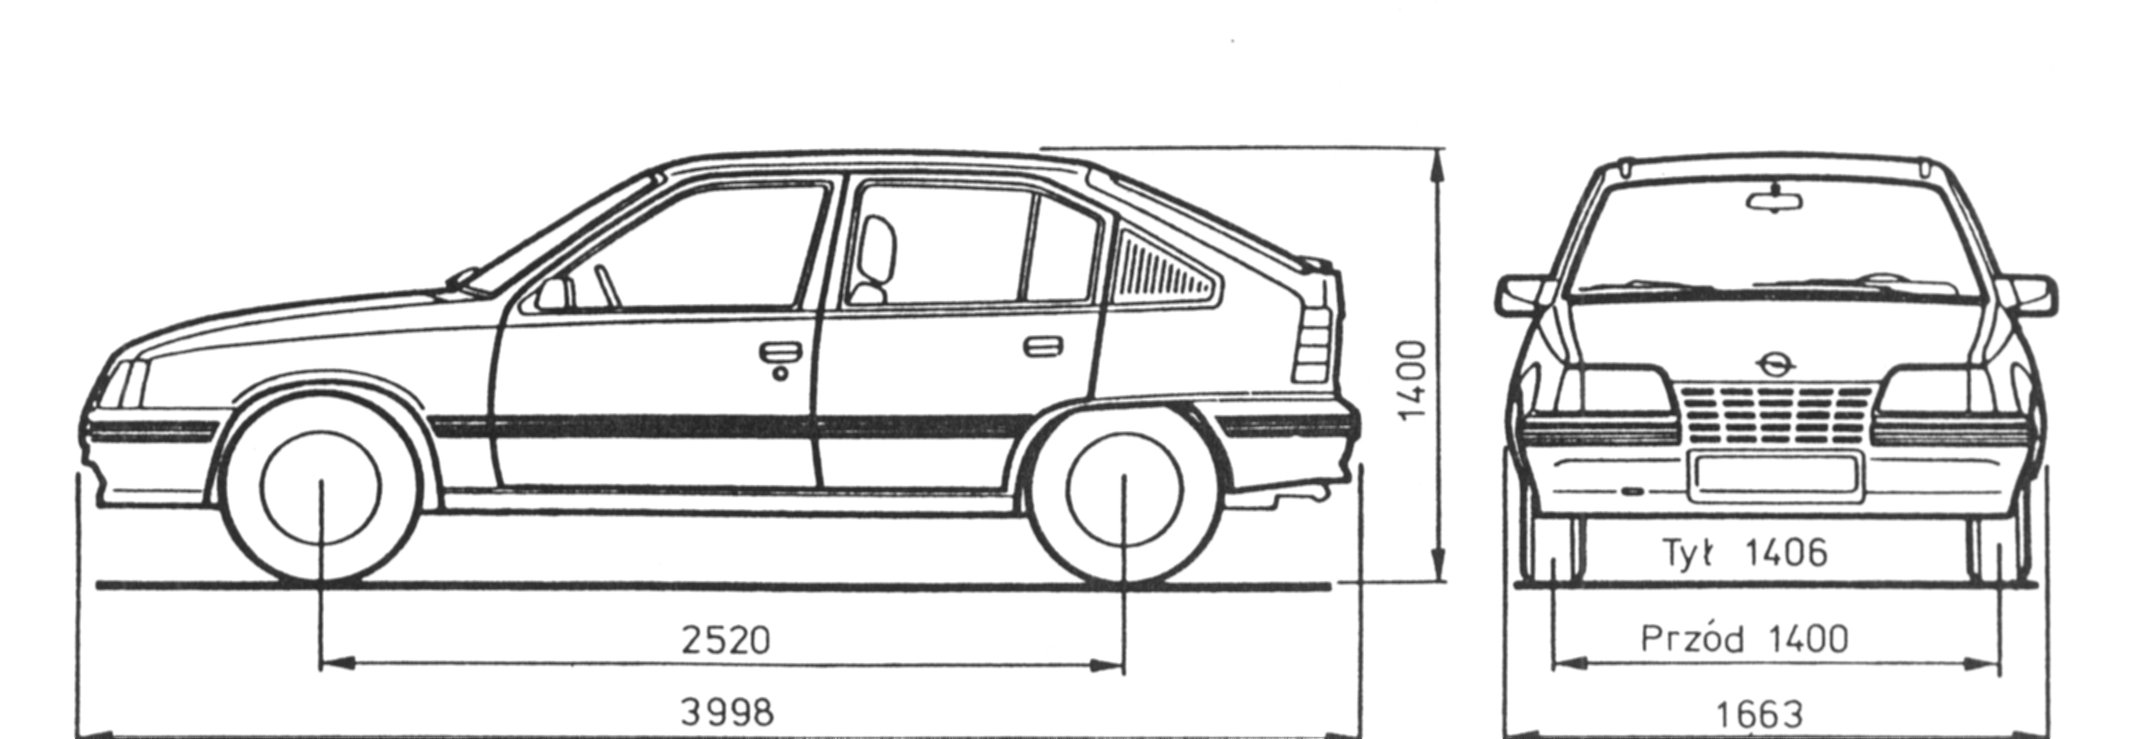 Opel Kadett E blueprint